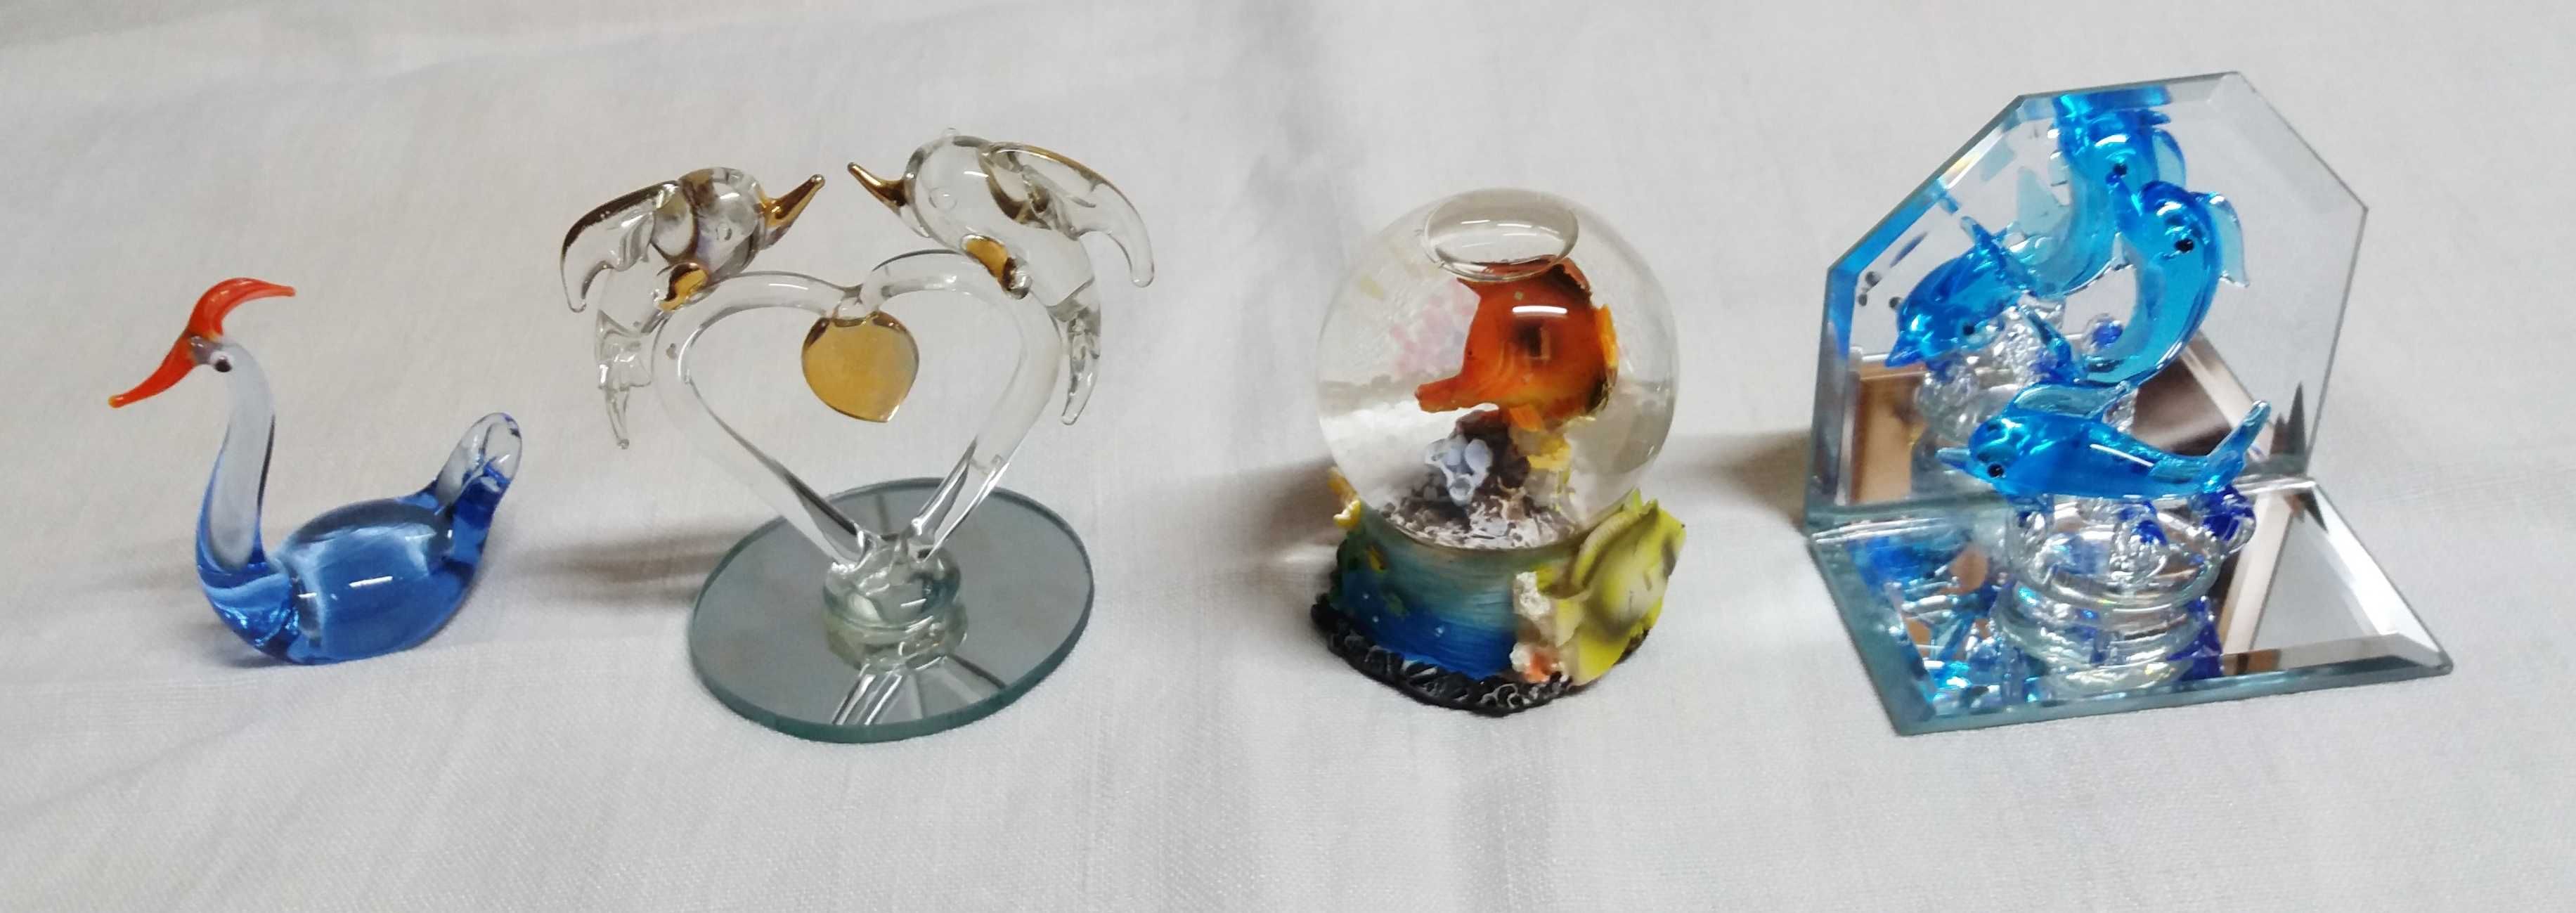 Peças em vidro colorido para decoração